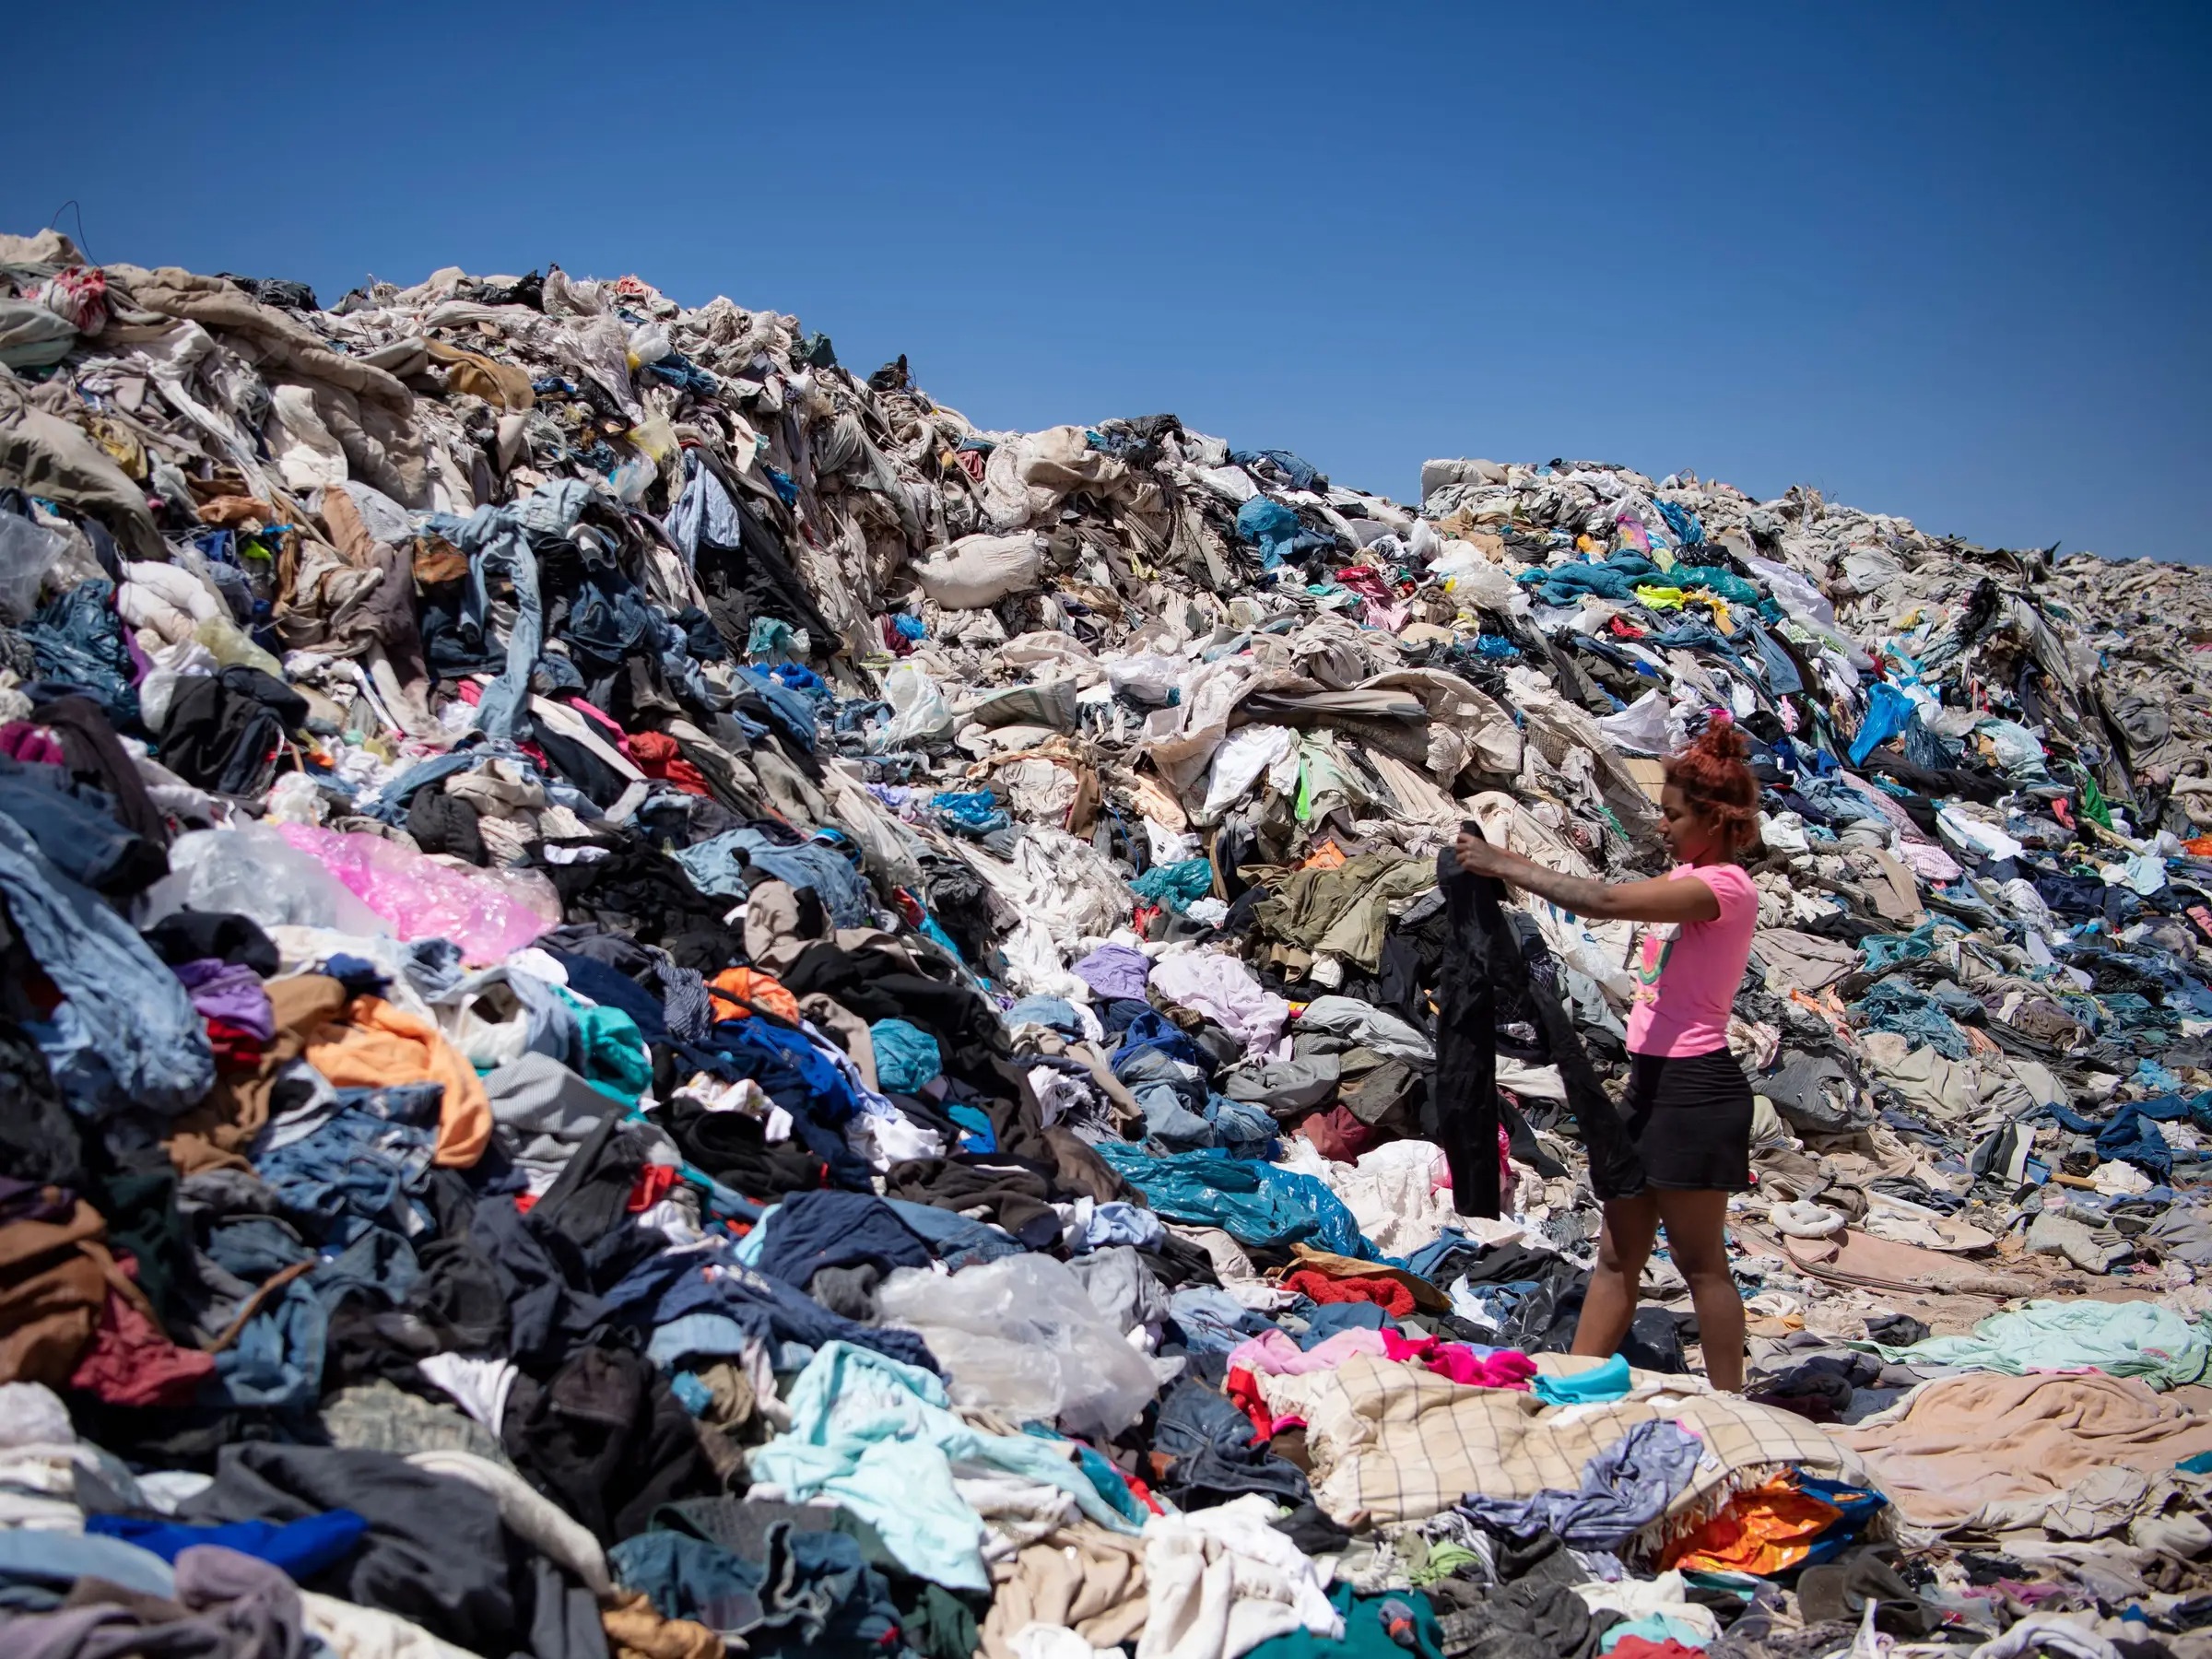 Así es el 'cementerio' de ropa sin vender en pleno desierto de Chile |  Business Insider España